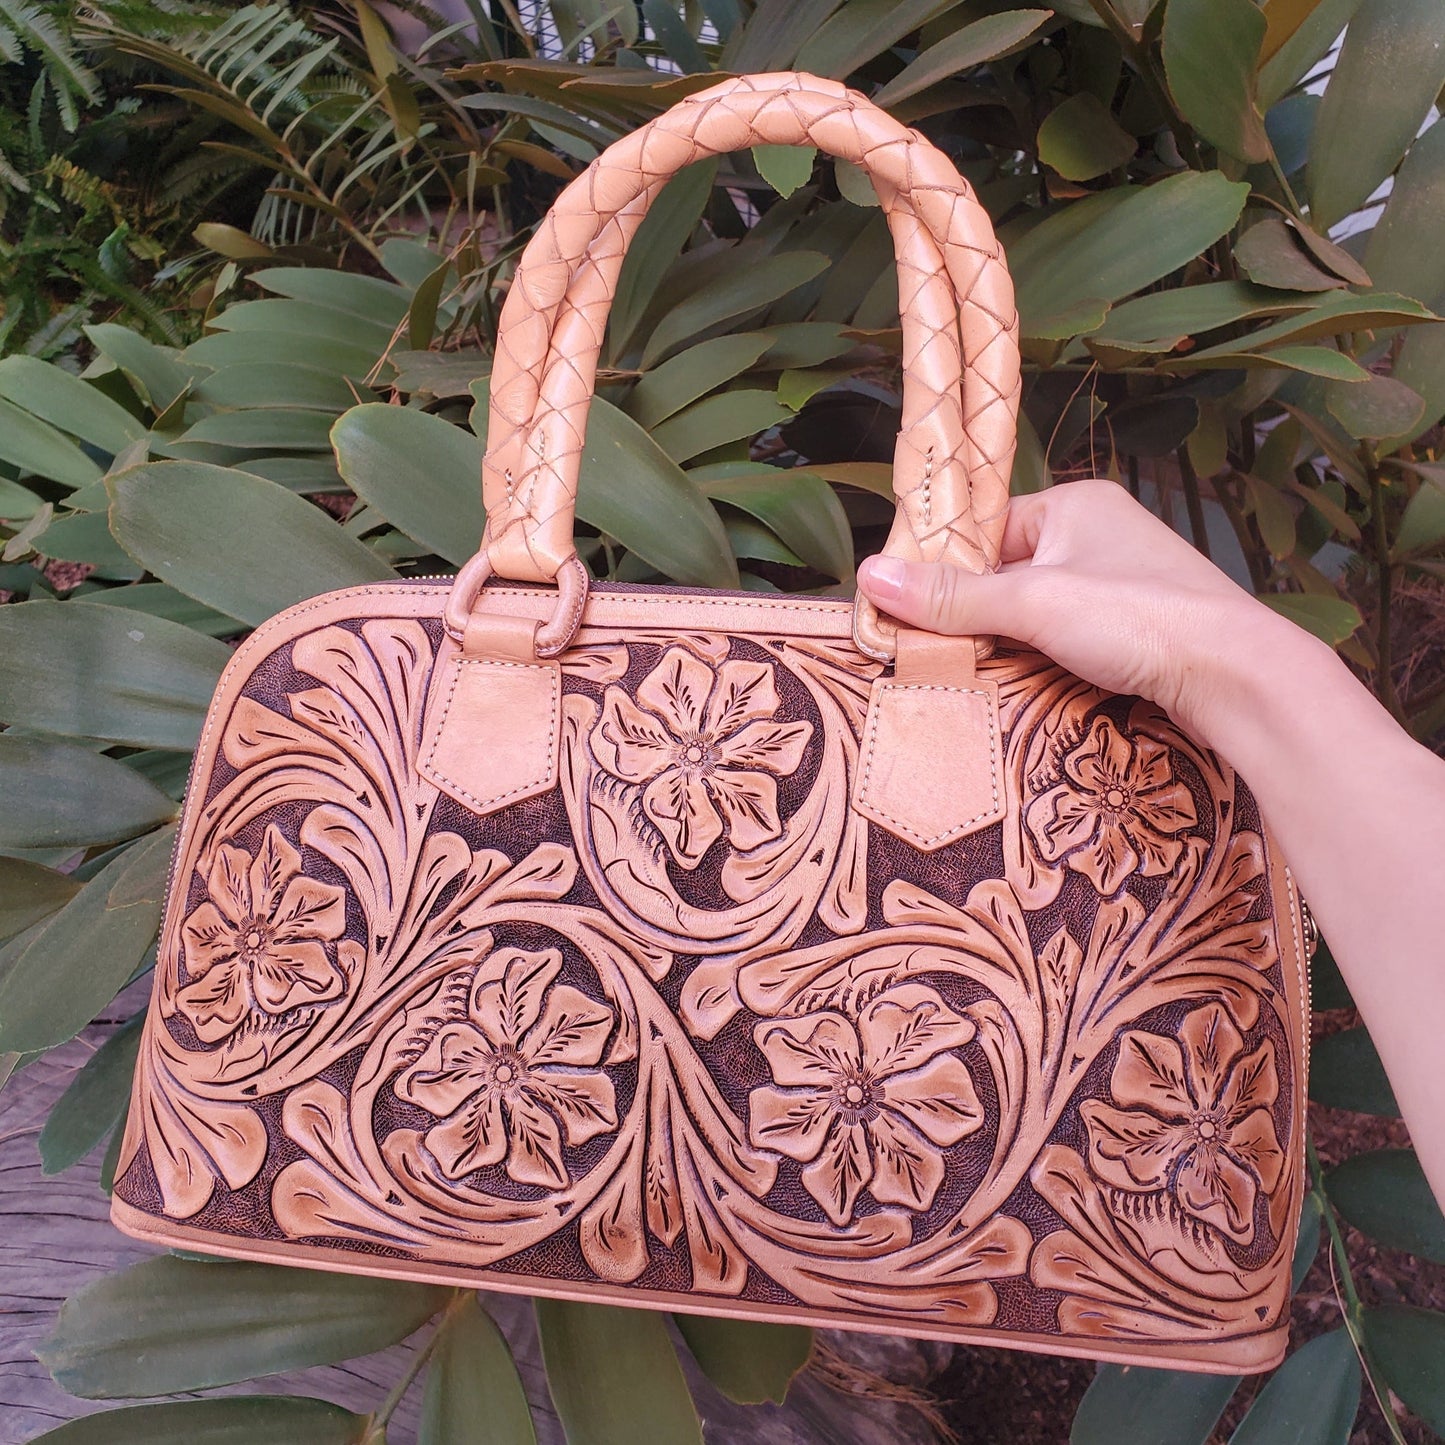 Hand Made Leather Satchel Bag "MAYA" by MIOHERMOSA Natural Maya